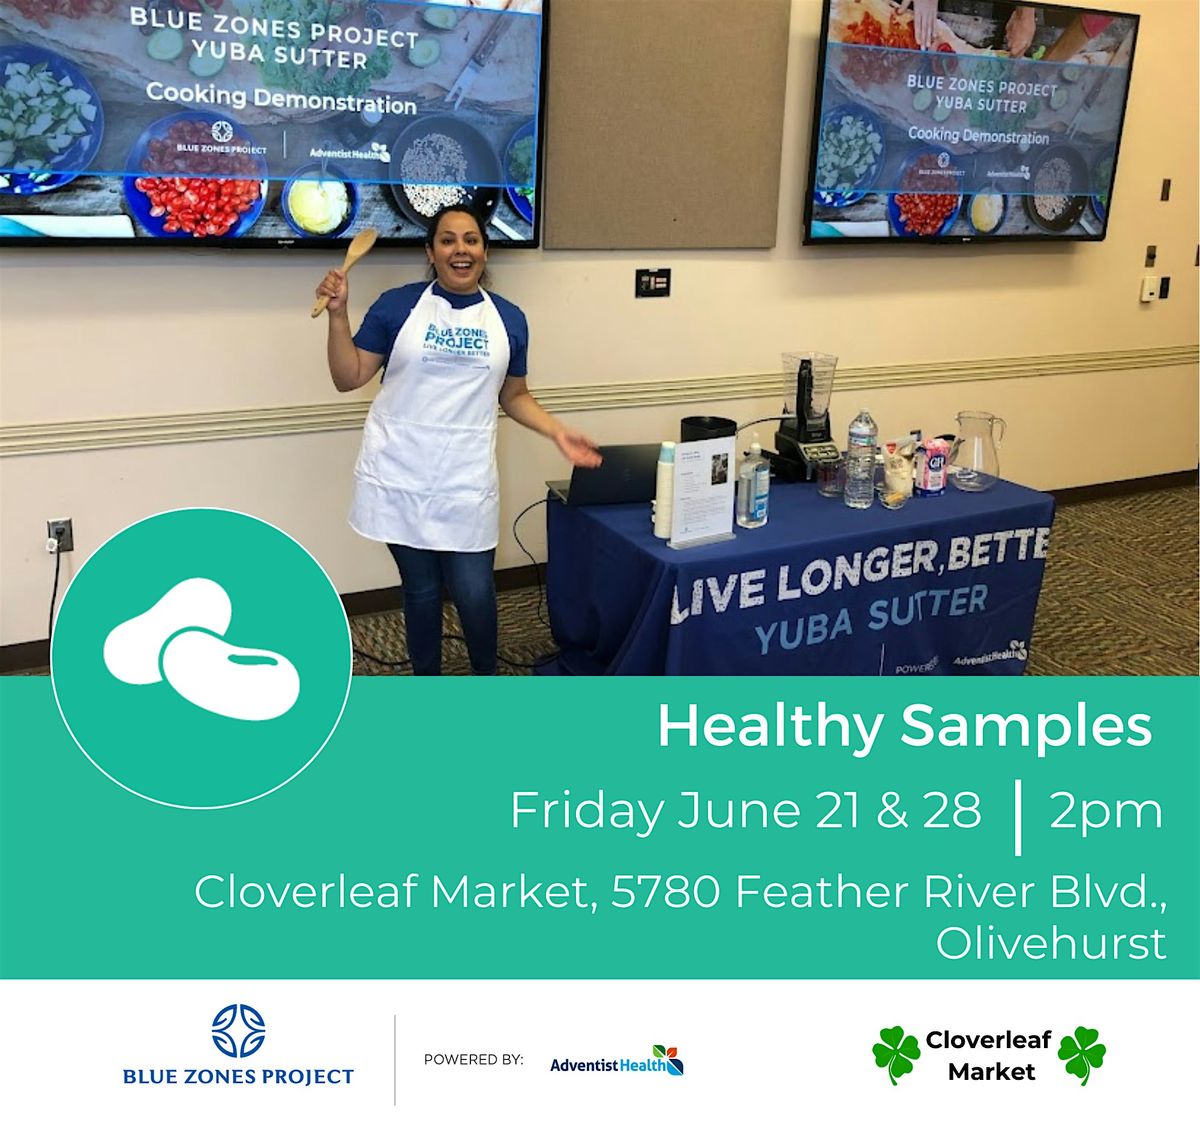 Blue Zones Project - Healthy Sampling at Cloverleaf Market